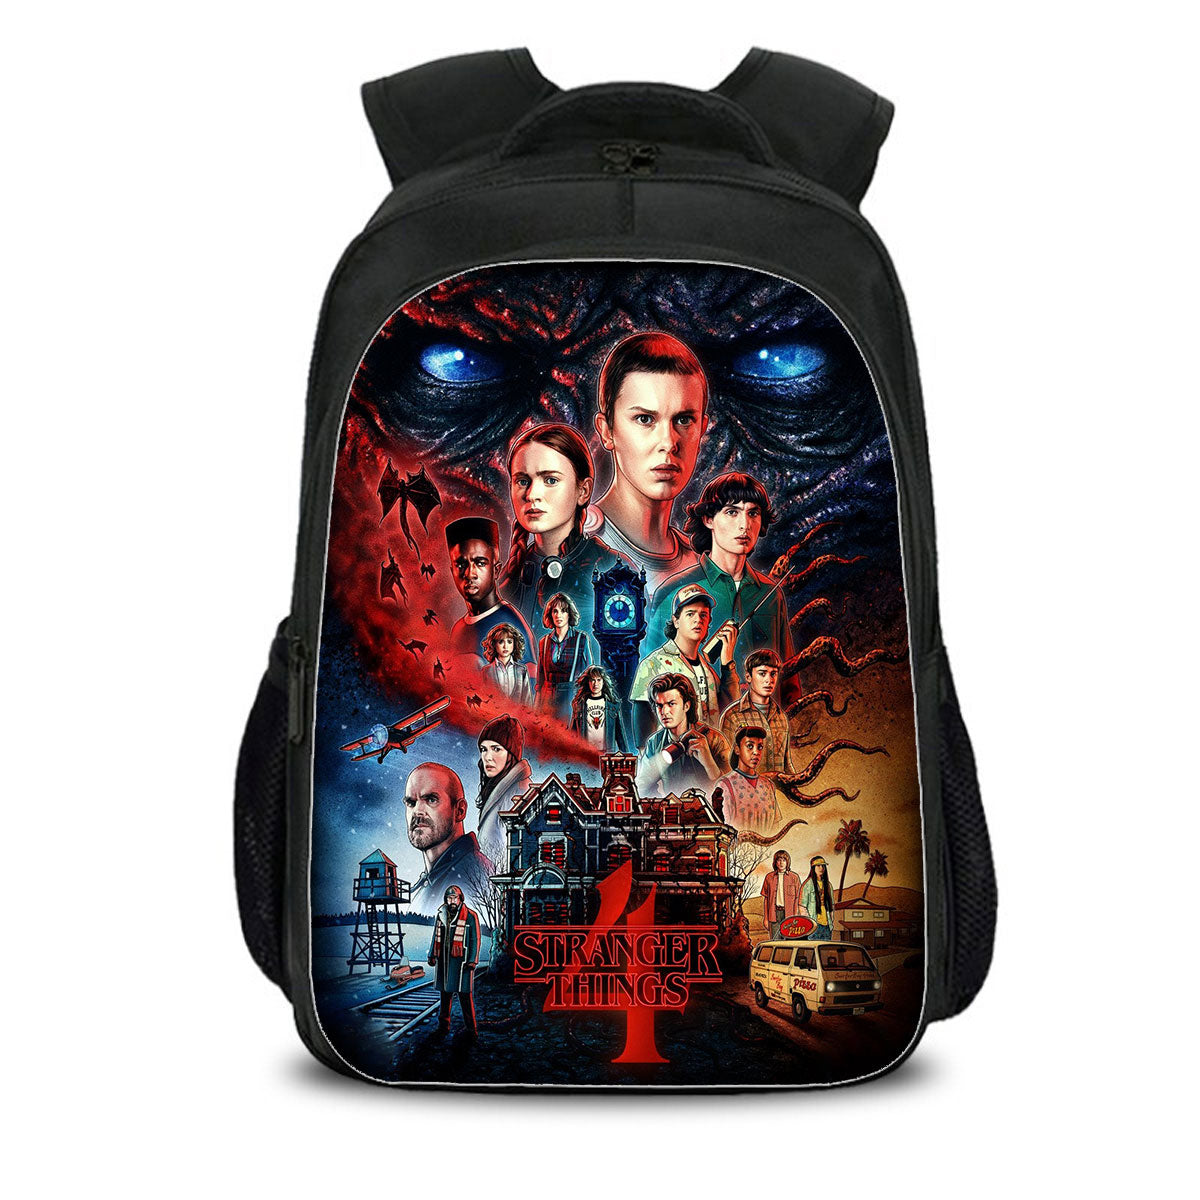 Stranger Things Season 4 Backpack Lunch Bag Shoulder Bag Pencil Case Ideal Present